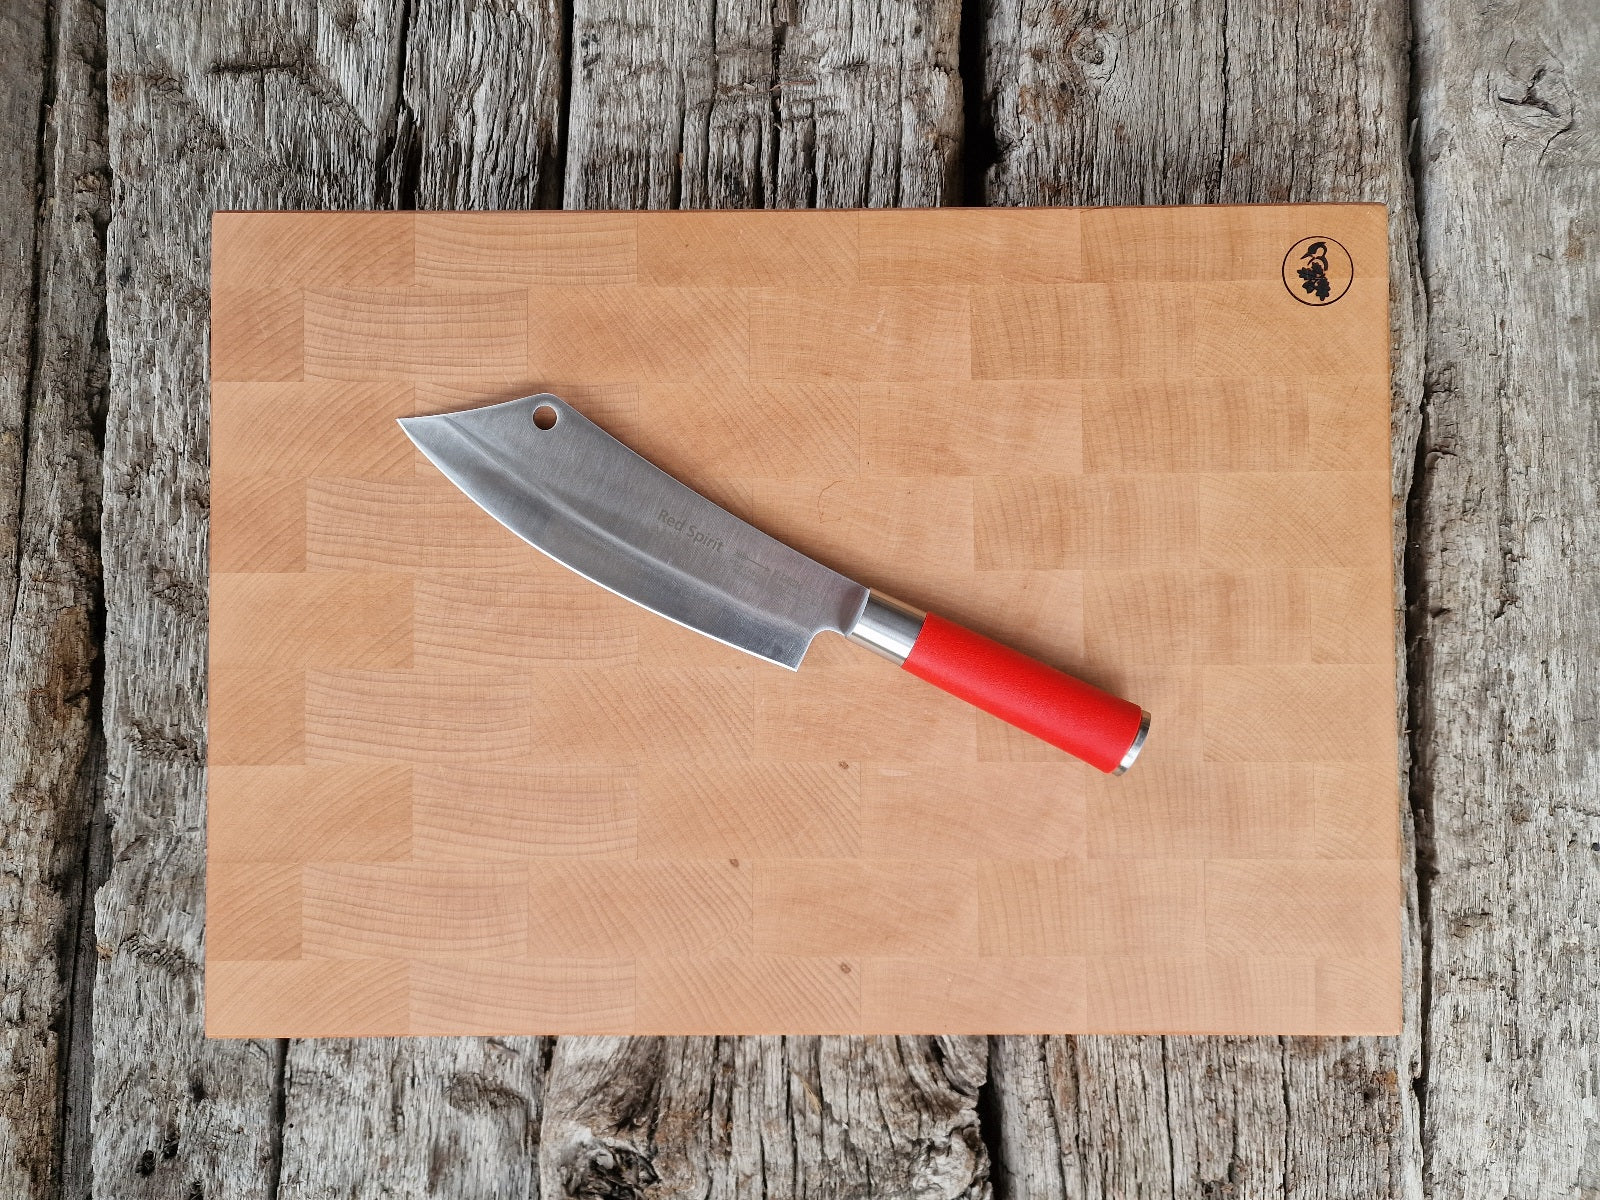 Stirnholz Buche Schneideblock in 50 cm Breite auf alten Eichenbalken liegend. Auf dem Block liegt ein DICK Ajax Messer mit rotem Griff.